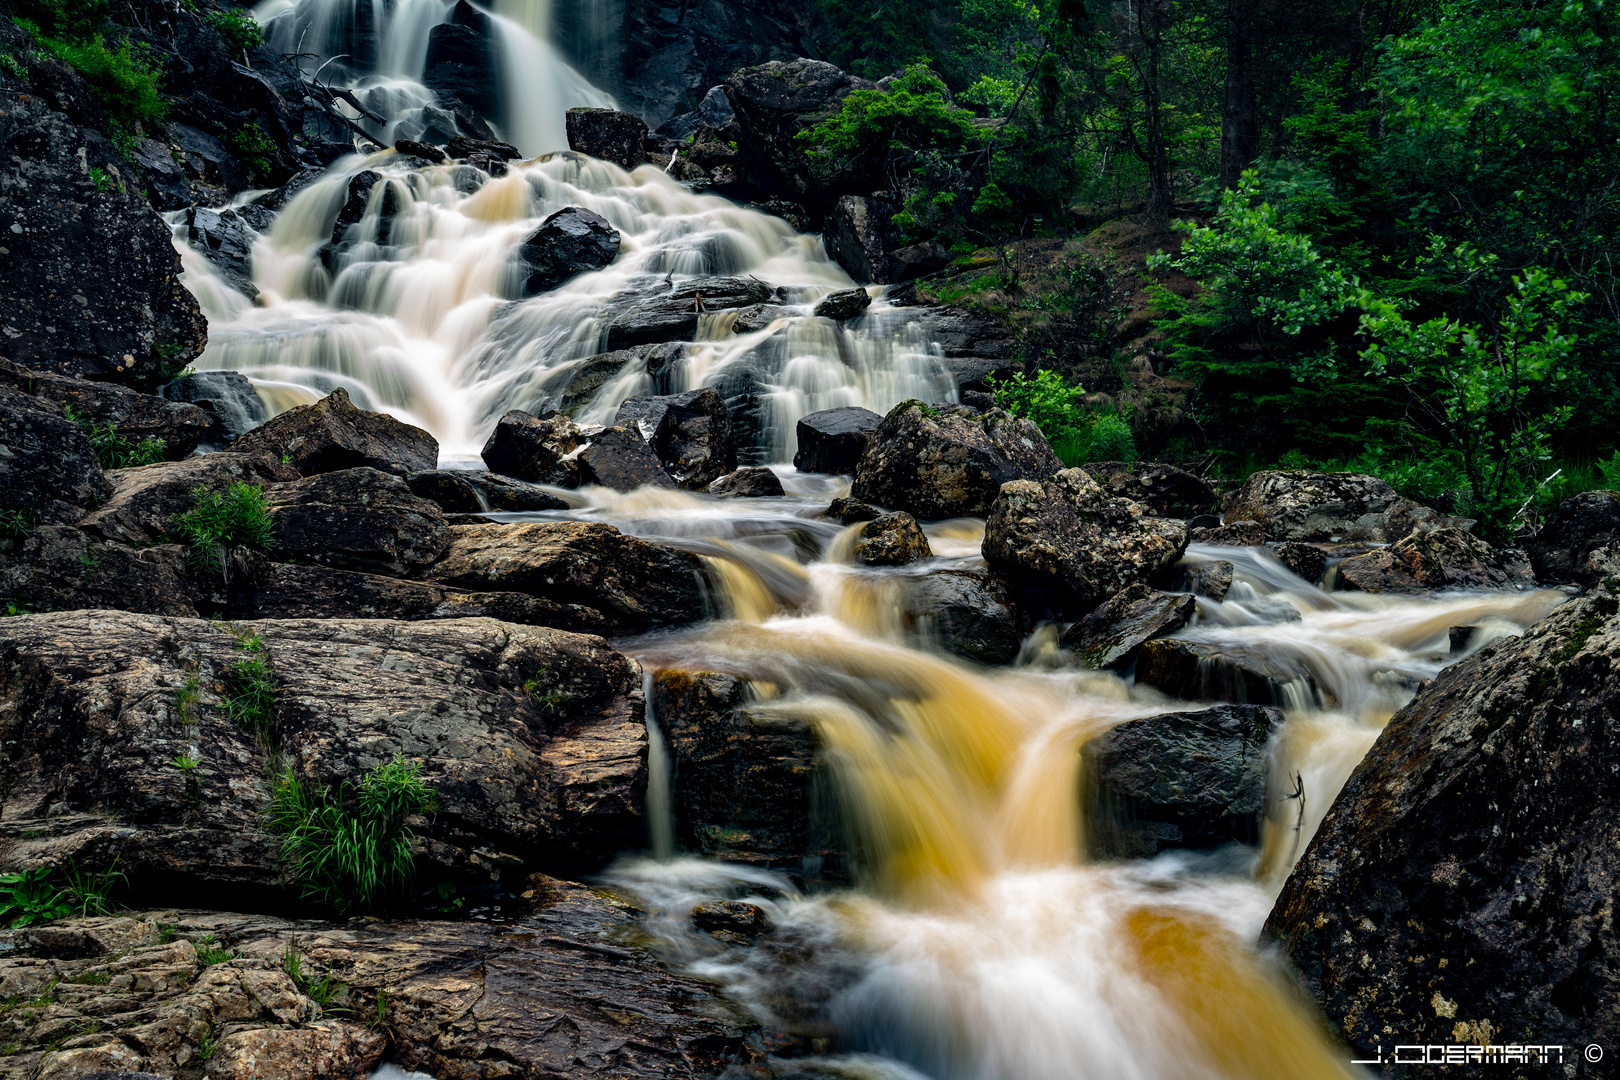 Wasserfall in Schweden